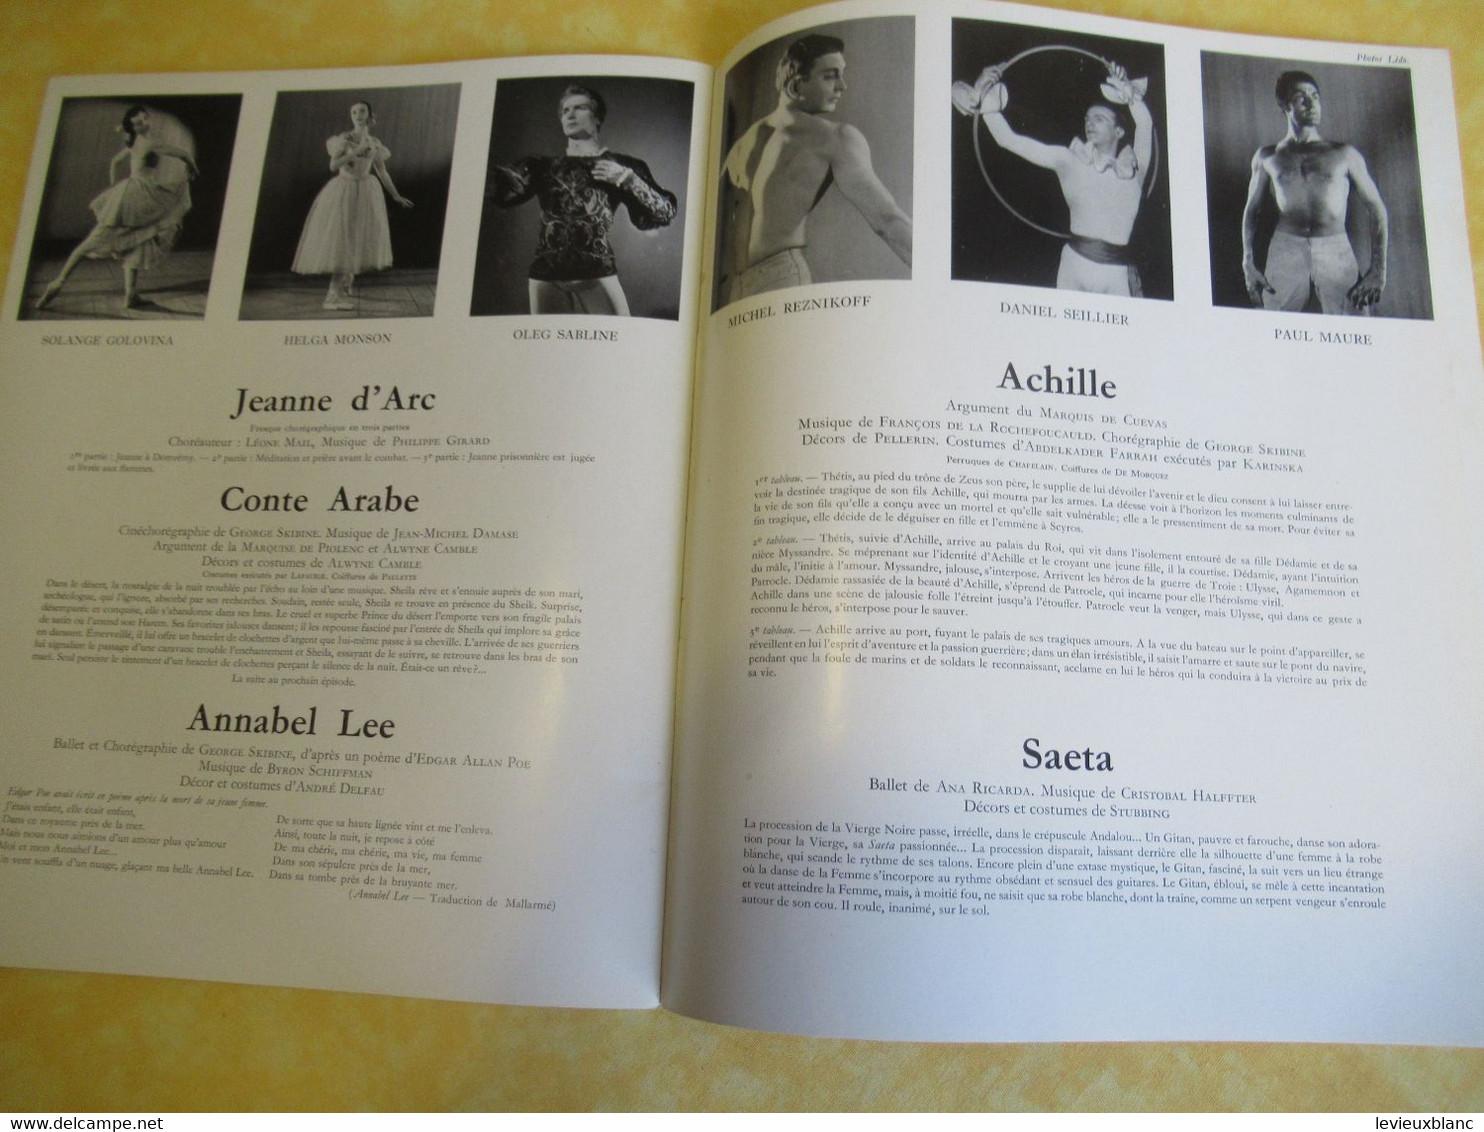 Plaquette ancienne/Théâtre des CHAMPS ELYSEES/Grand Ballet du Marquis de Cuevas/Tallchieff/Skibine/Golovine/1954 PROG341